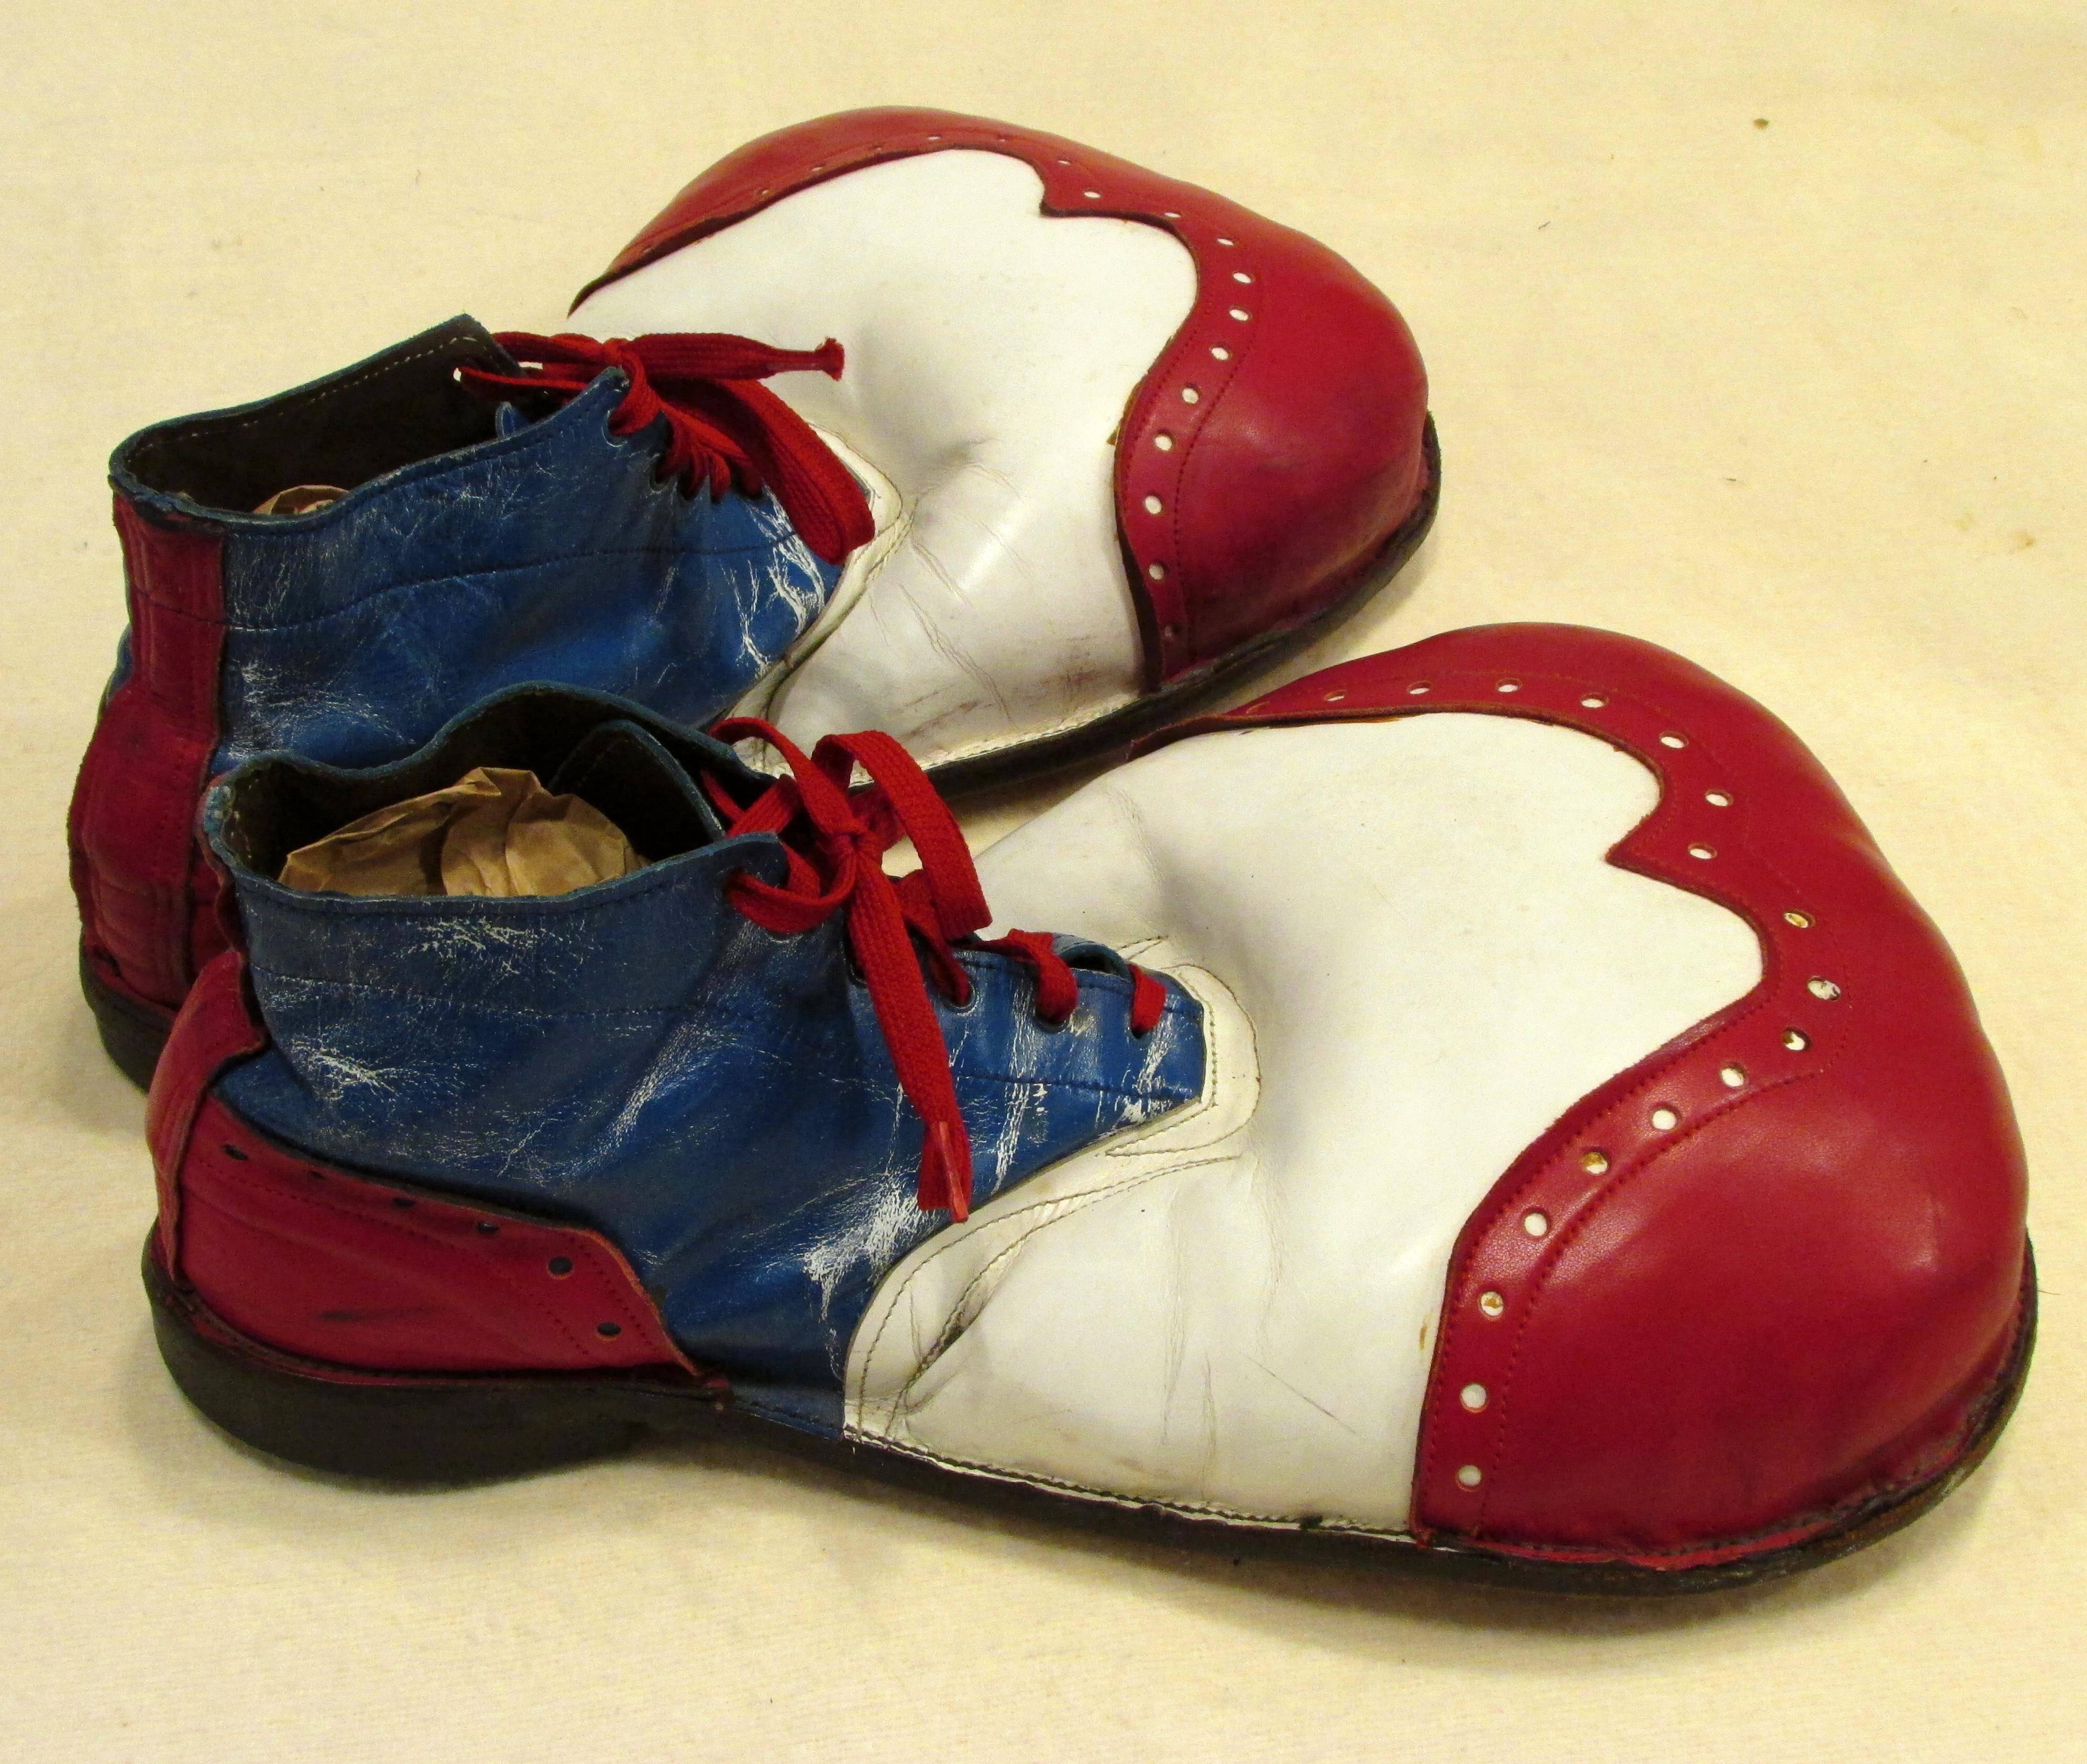 clown shoes blue